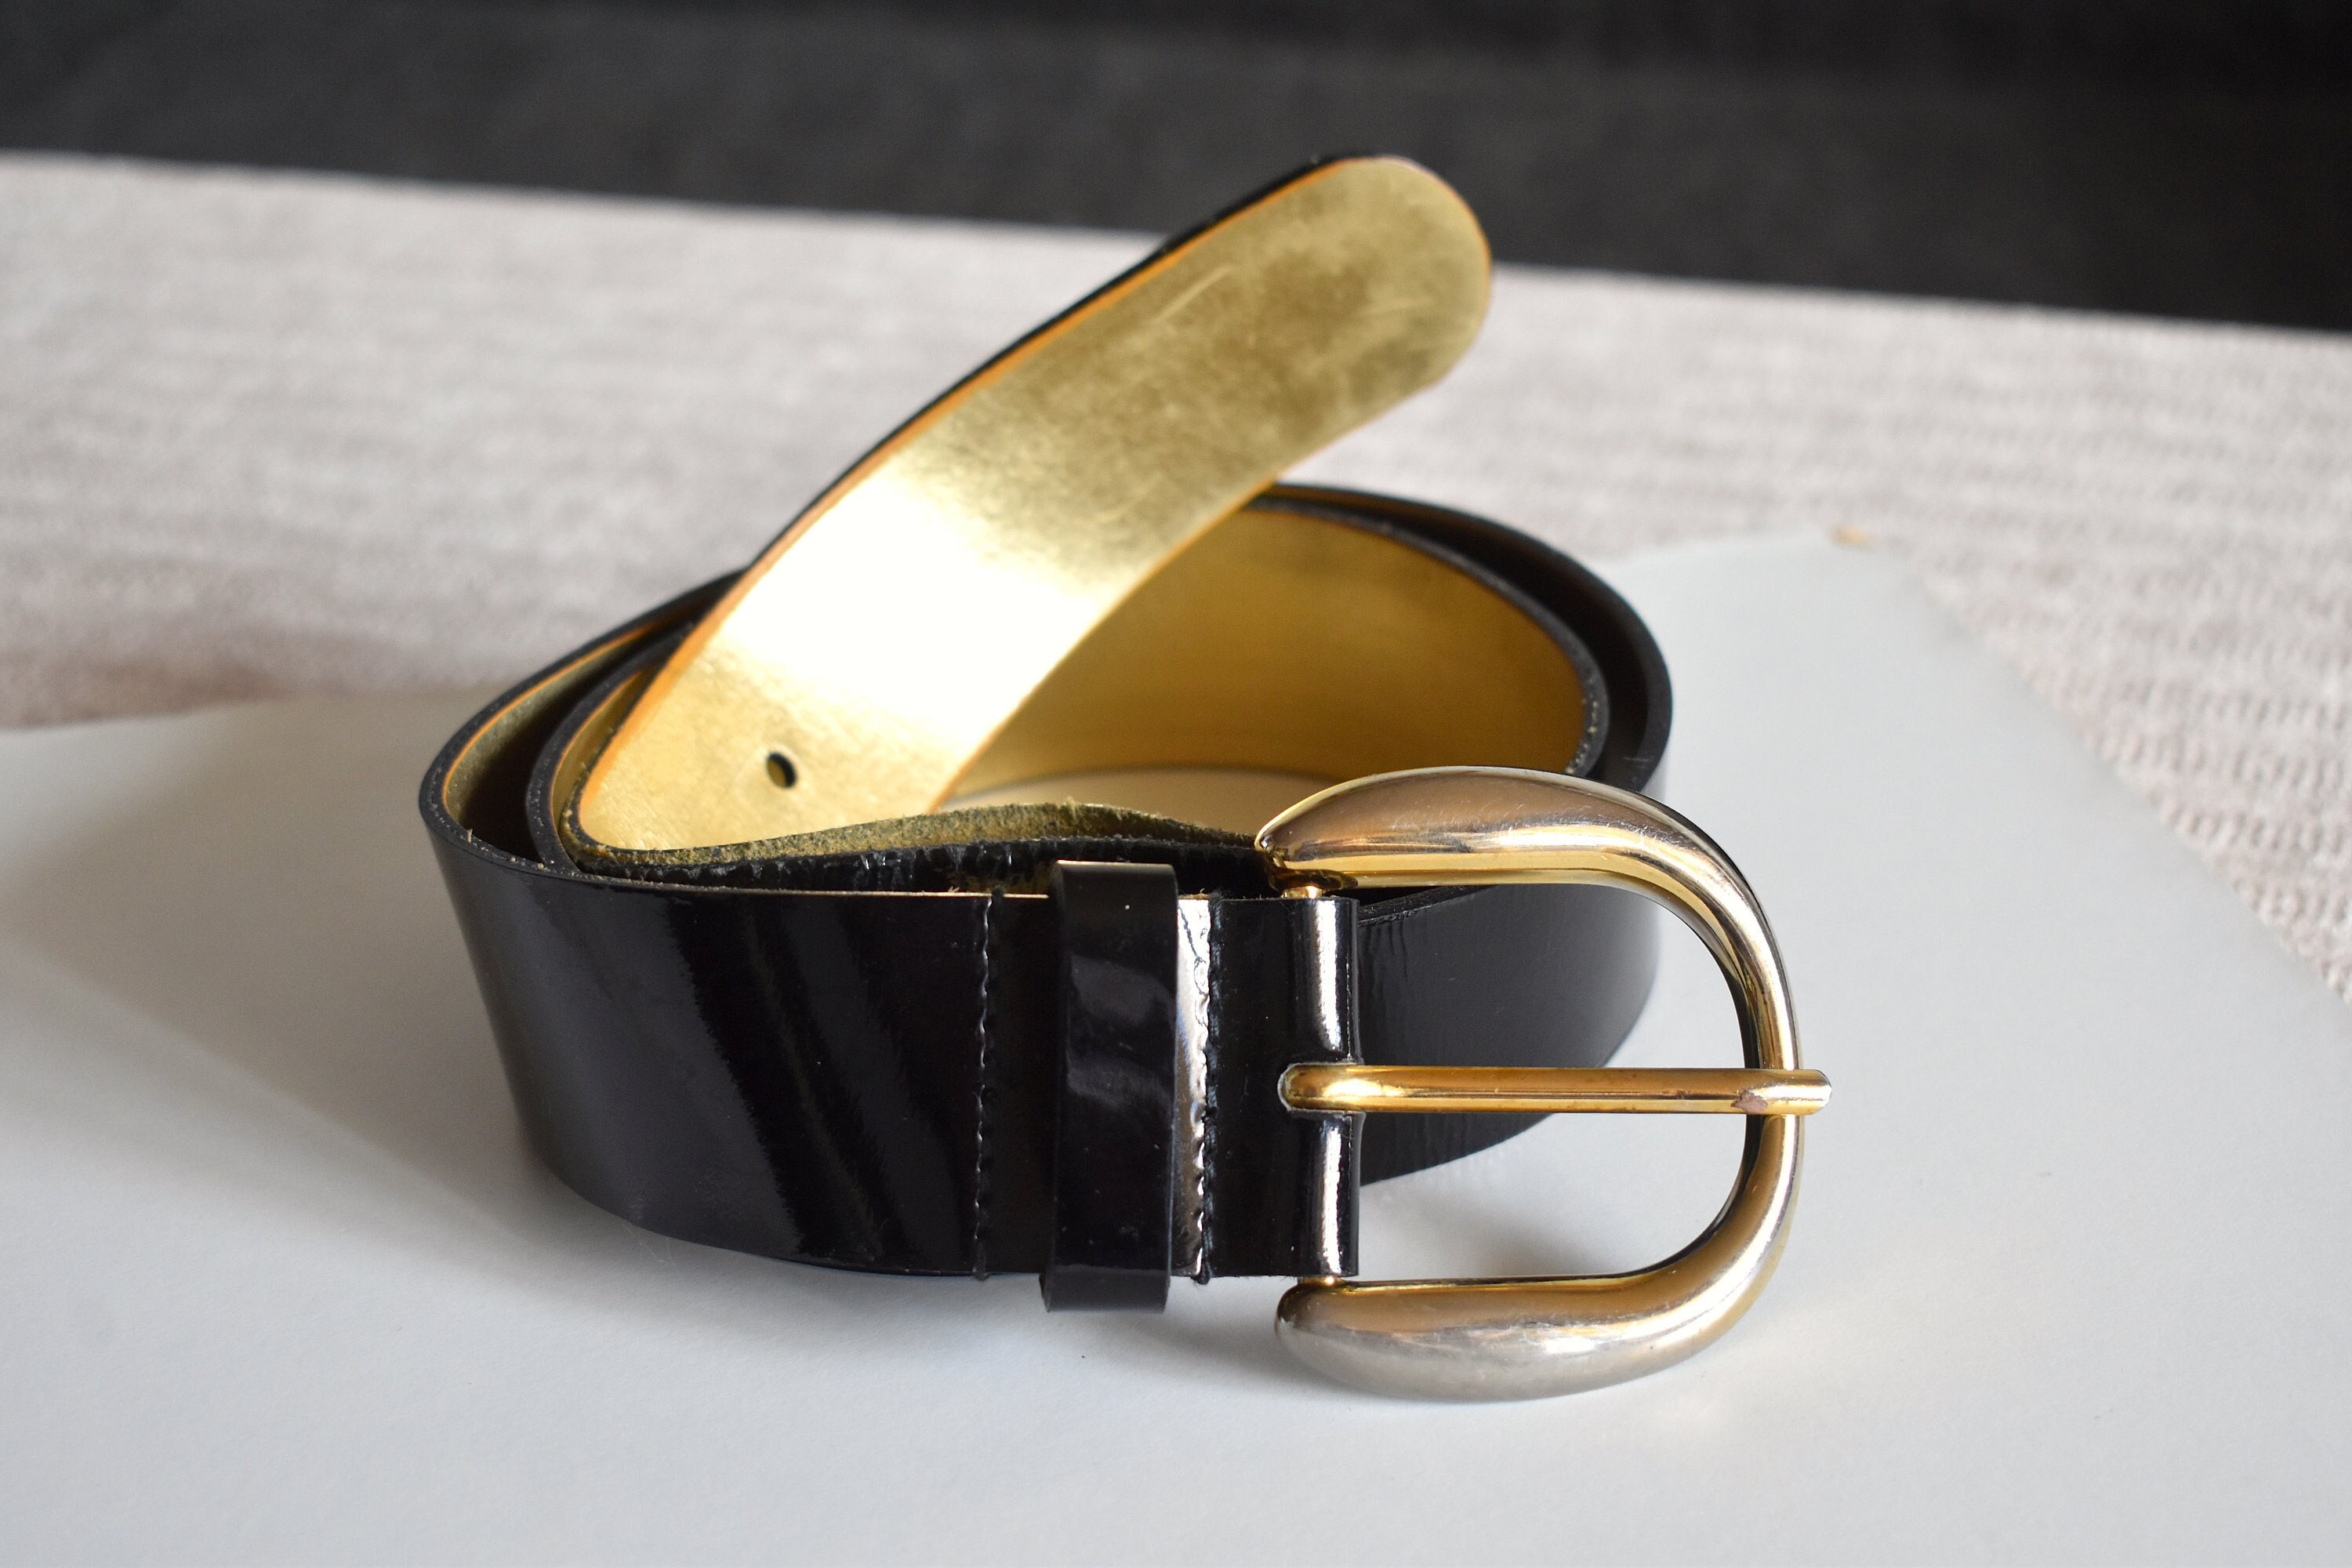  JNKET New Women's Fashion Genuine Leather Belt Heart